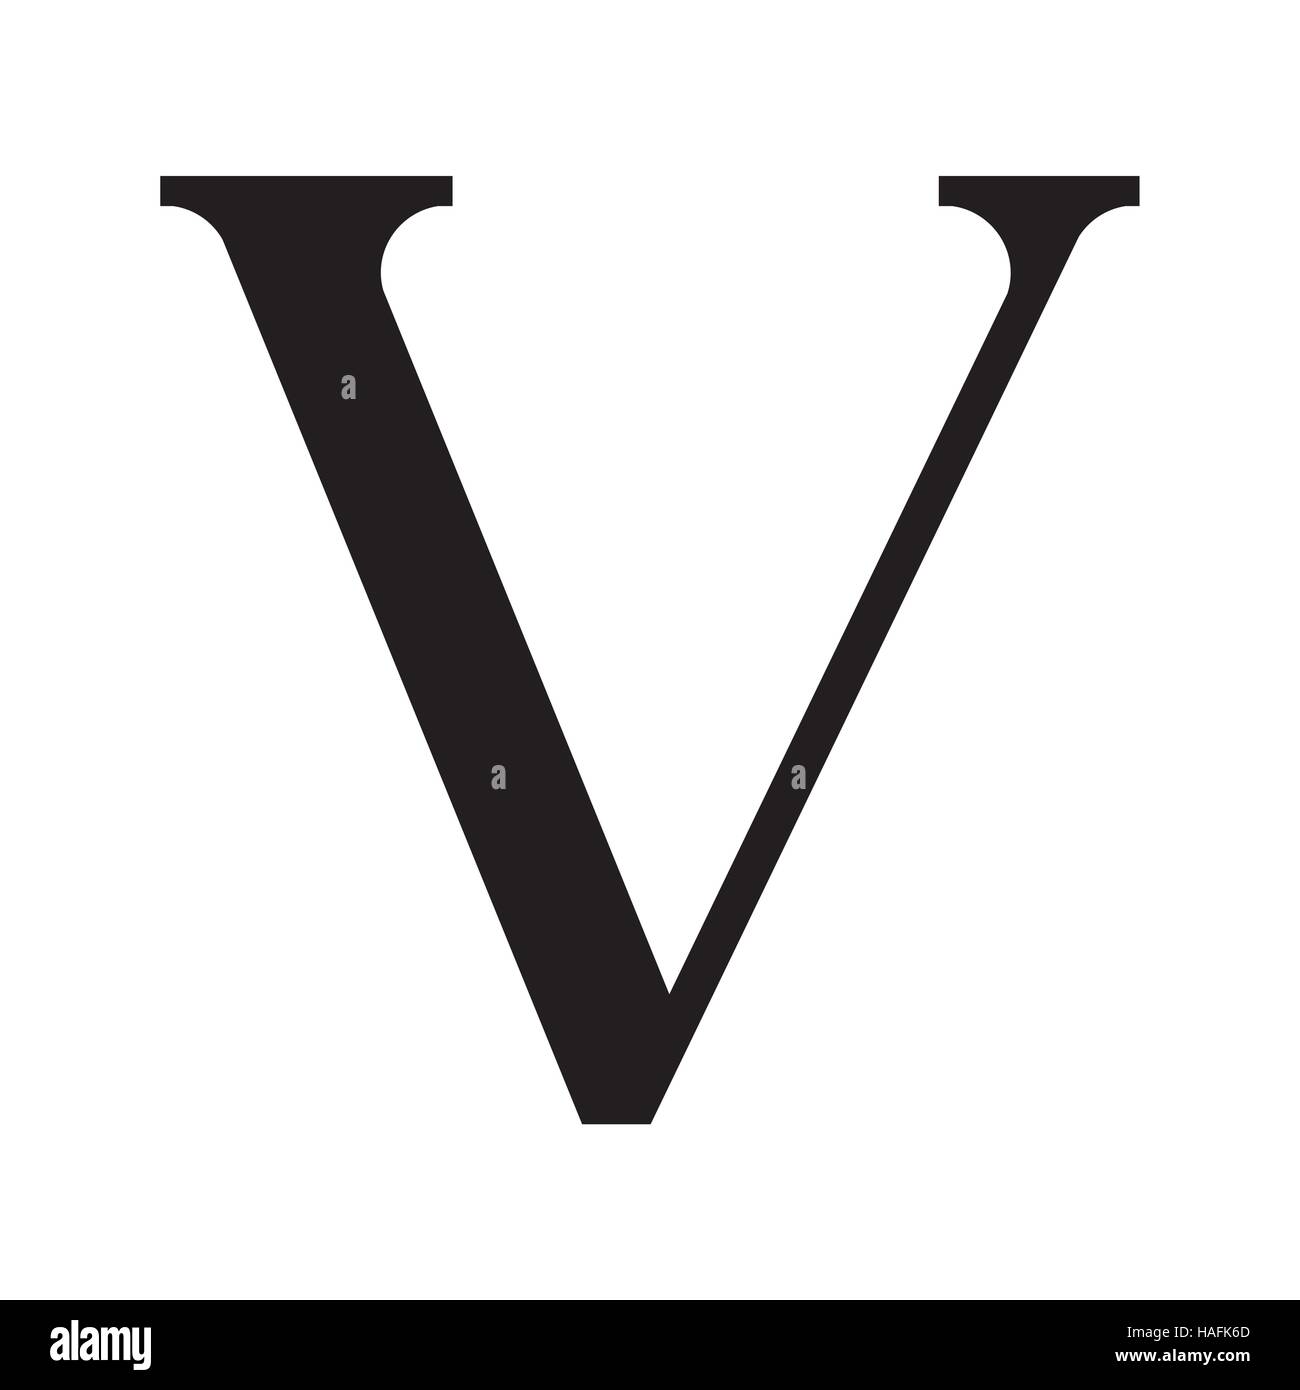 La lettre V style vintage Image Vectorielle Stock - Alamy